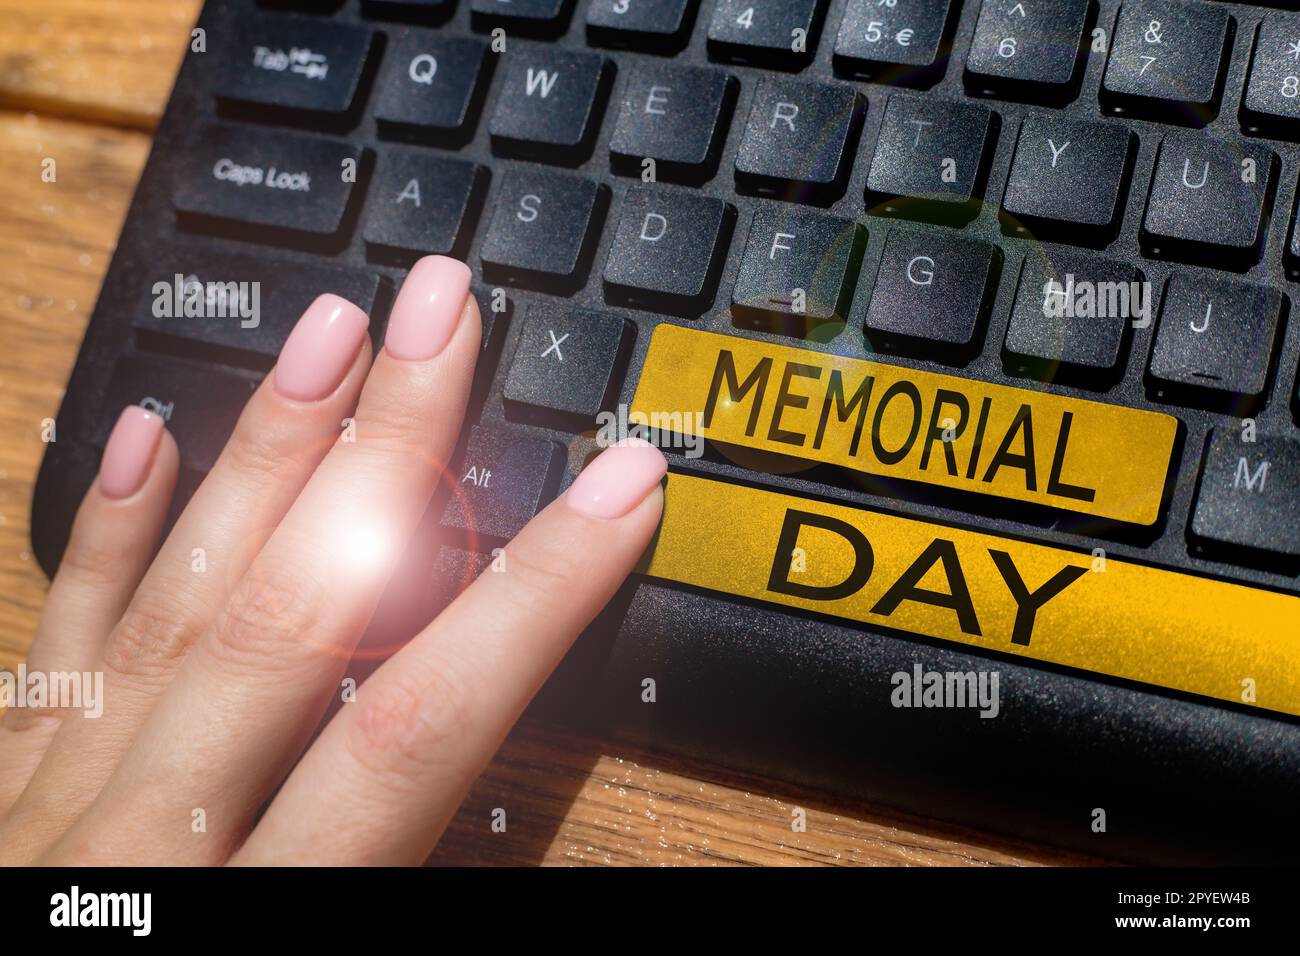 Handgeschriebenes Schild Memorial Day. Geschäftsidee, um die zu ehren und zu gedenken, die im Militärdienst starben Stockfoto